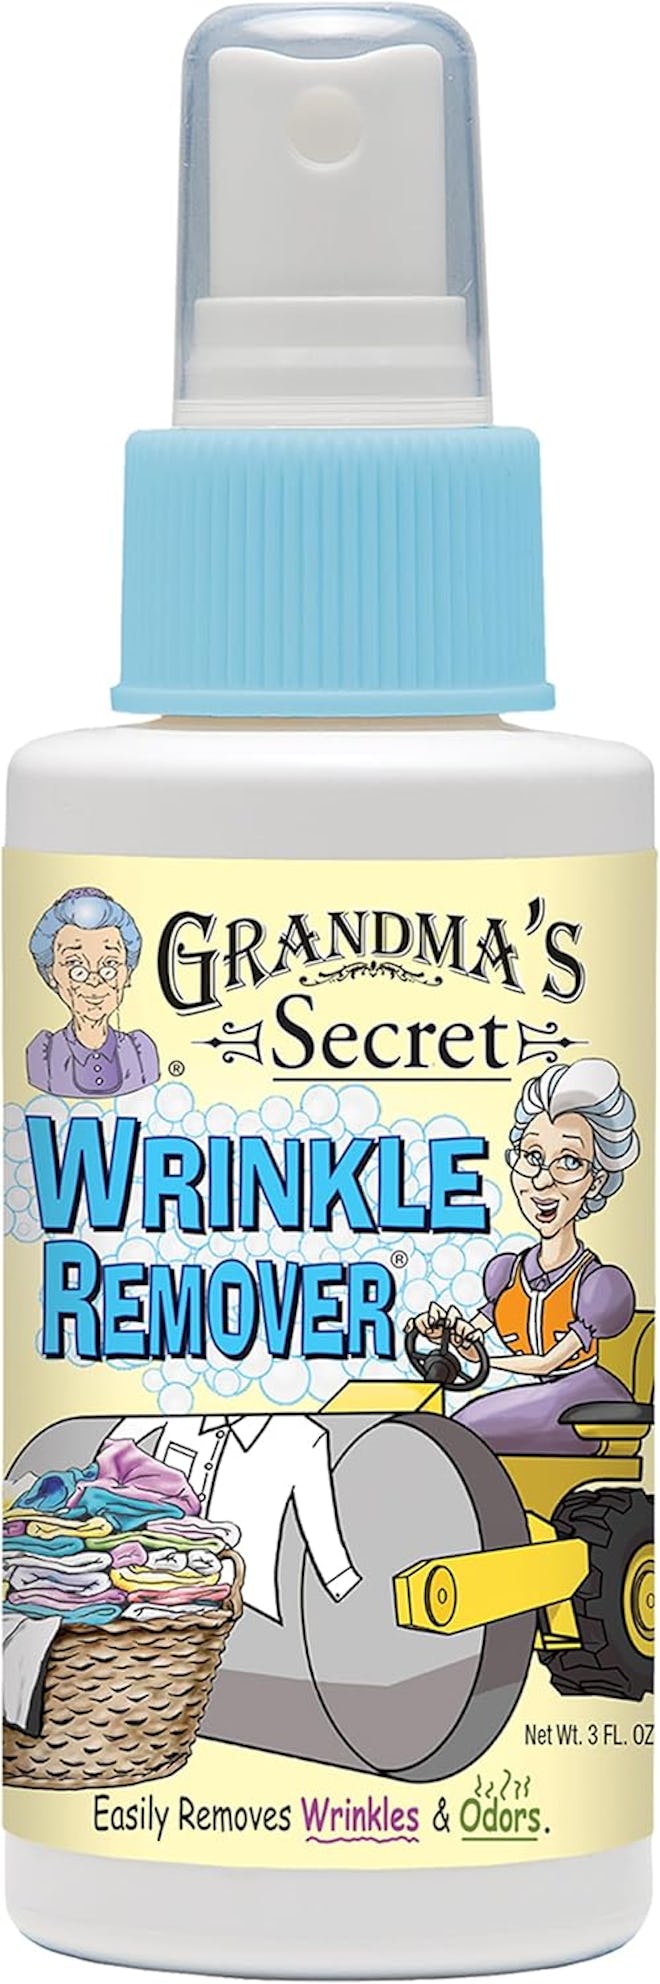 Grandma's Secret Wrinkle Remover Spray